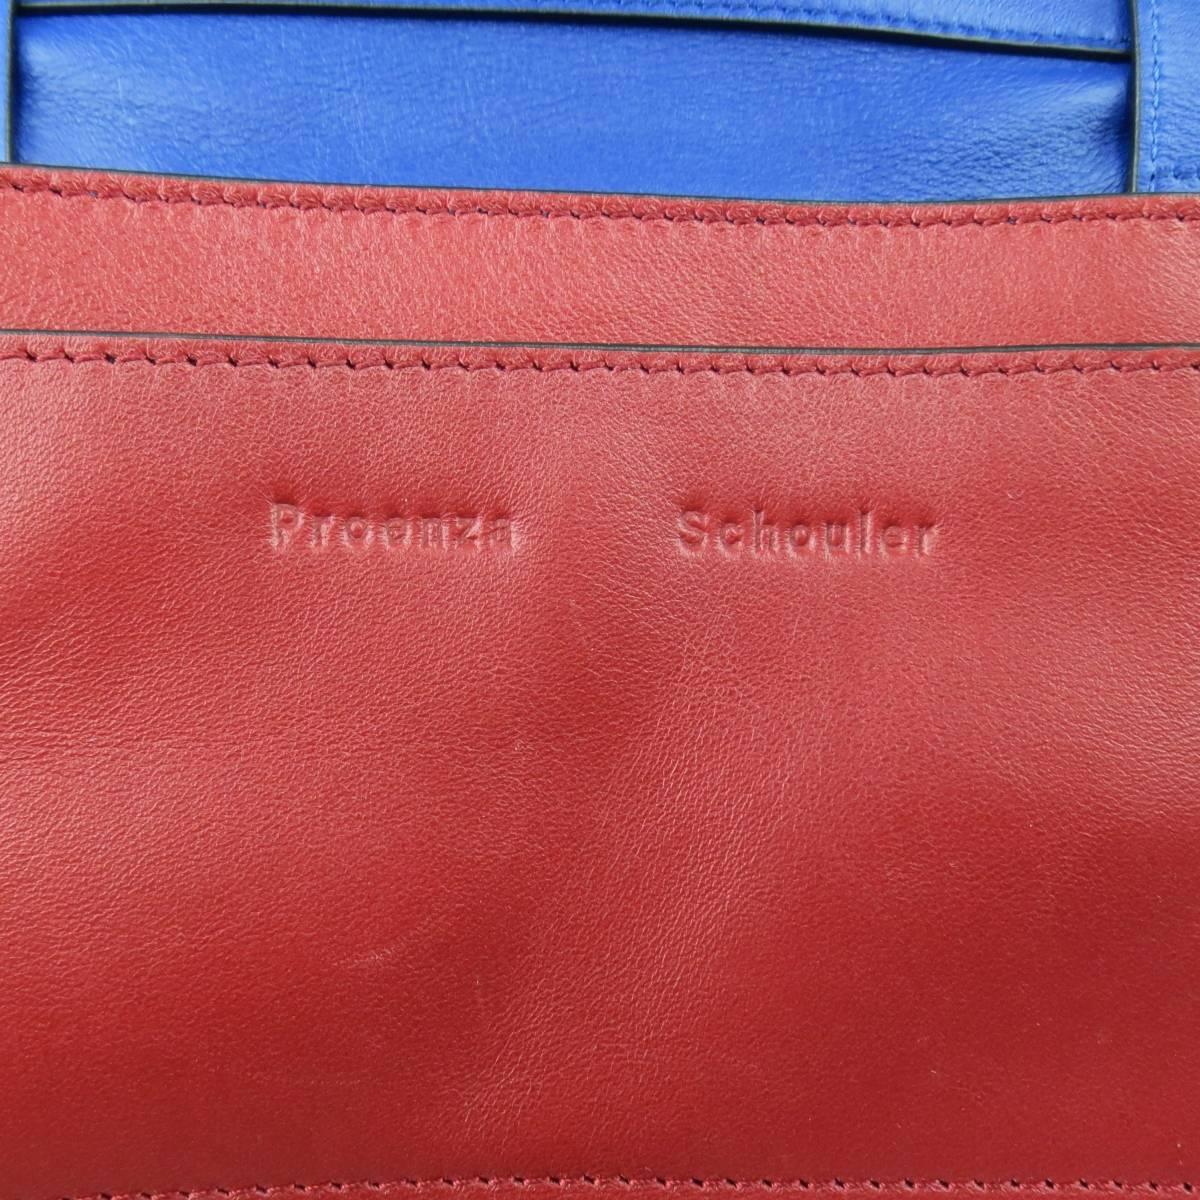 PROENZA SCHOULER Red & Blue Color Block Leather Shoulder Bag 4